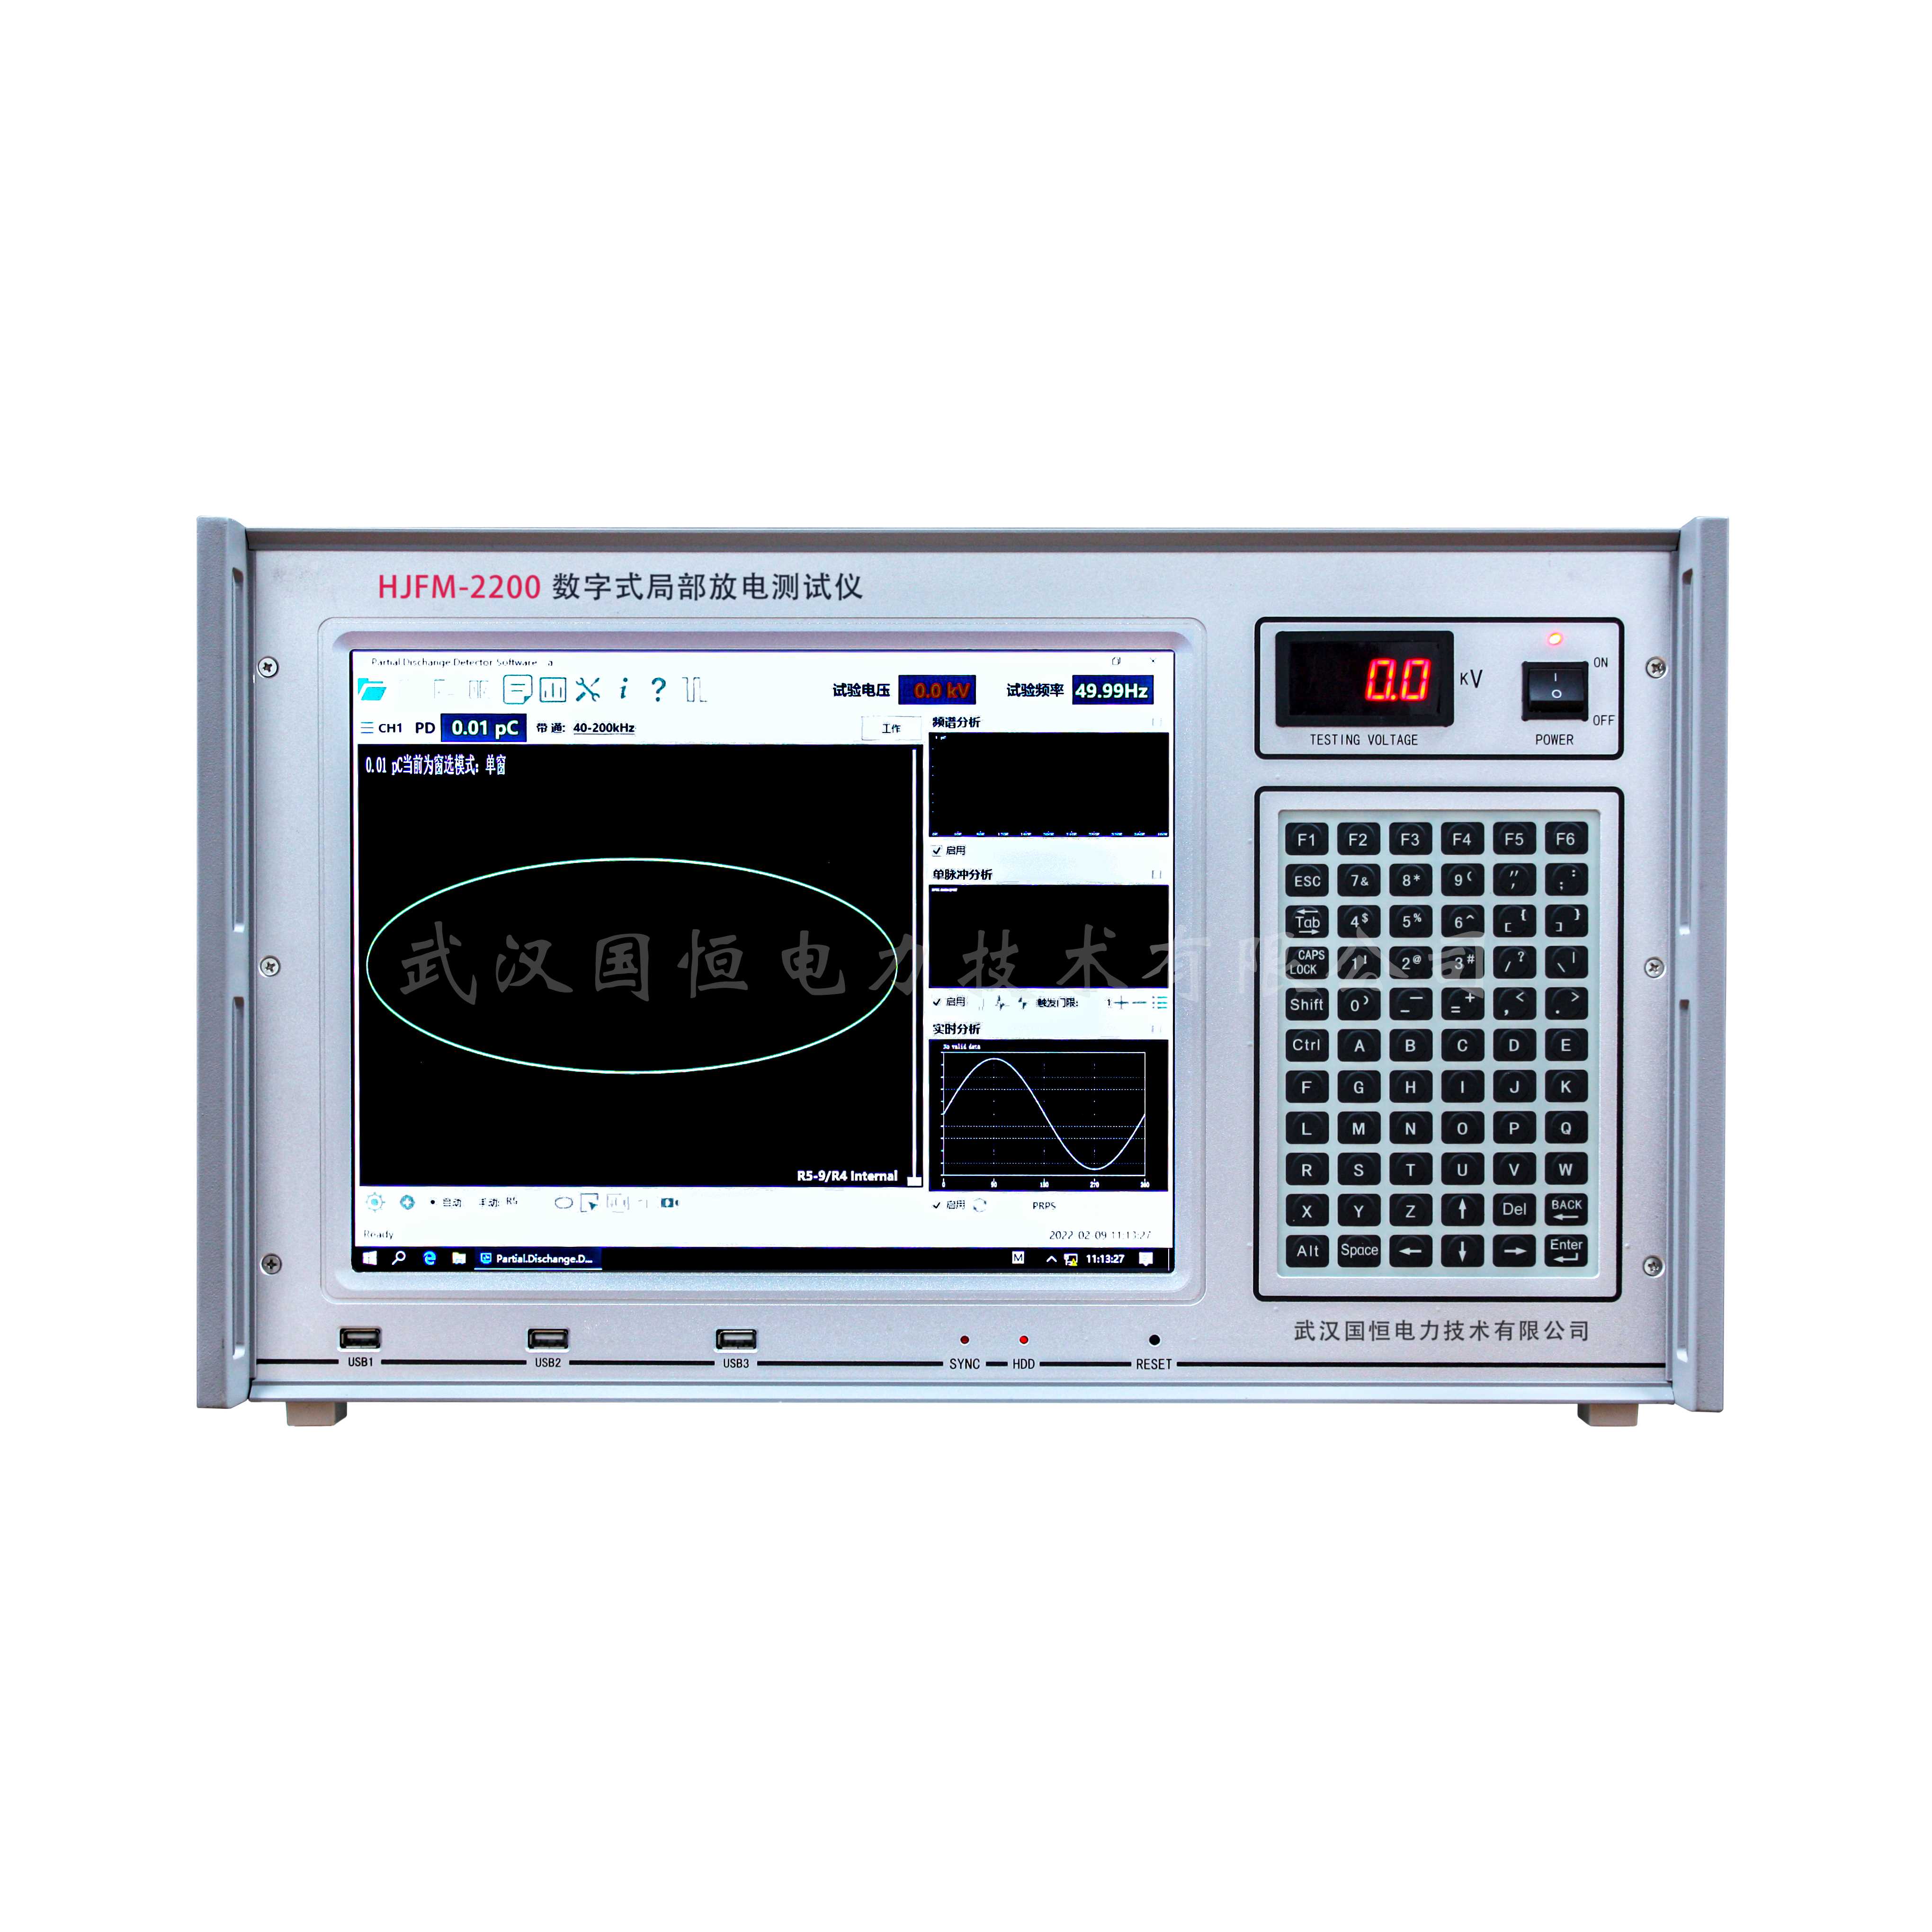 7.HJFM-2200数字式局部放电测试仪